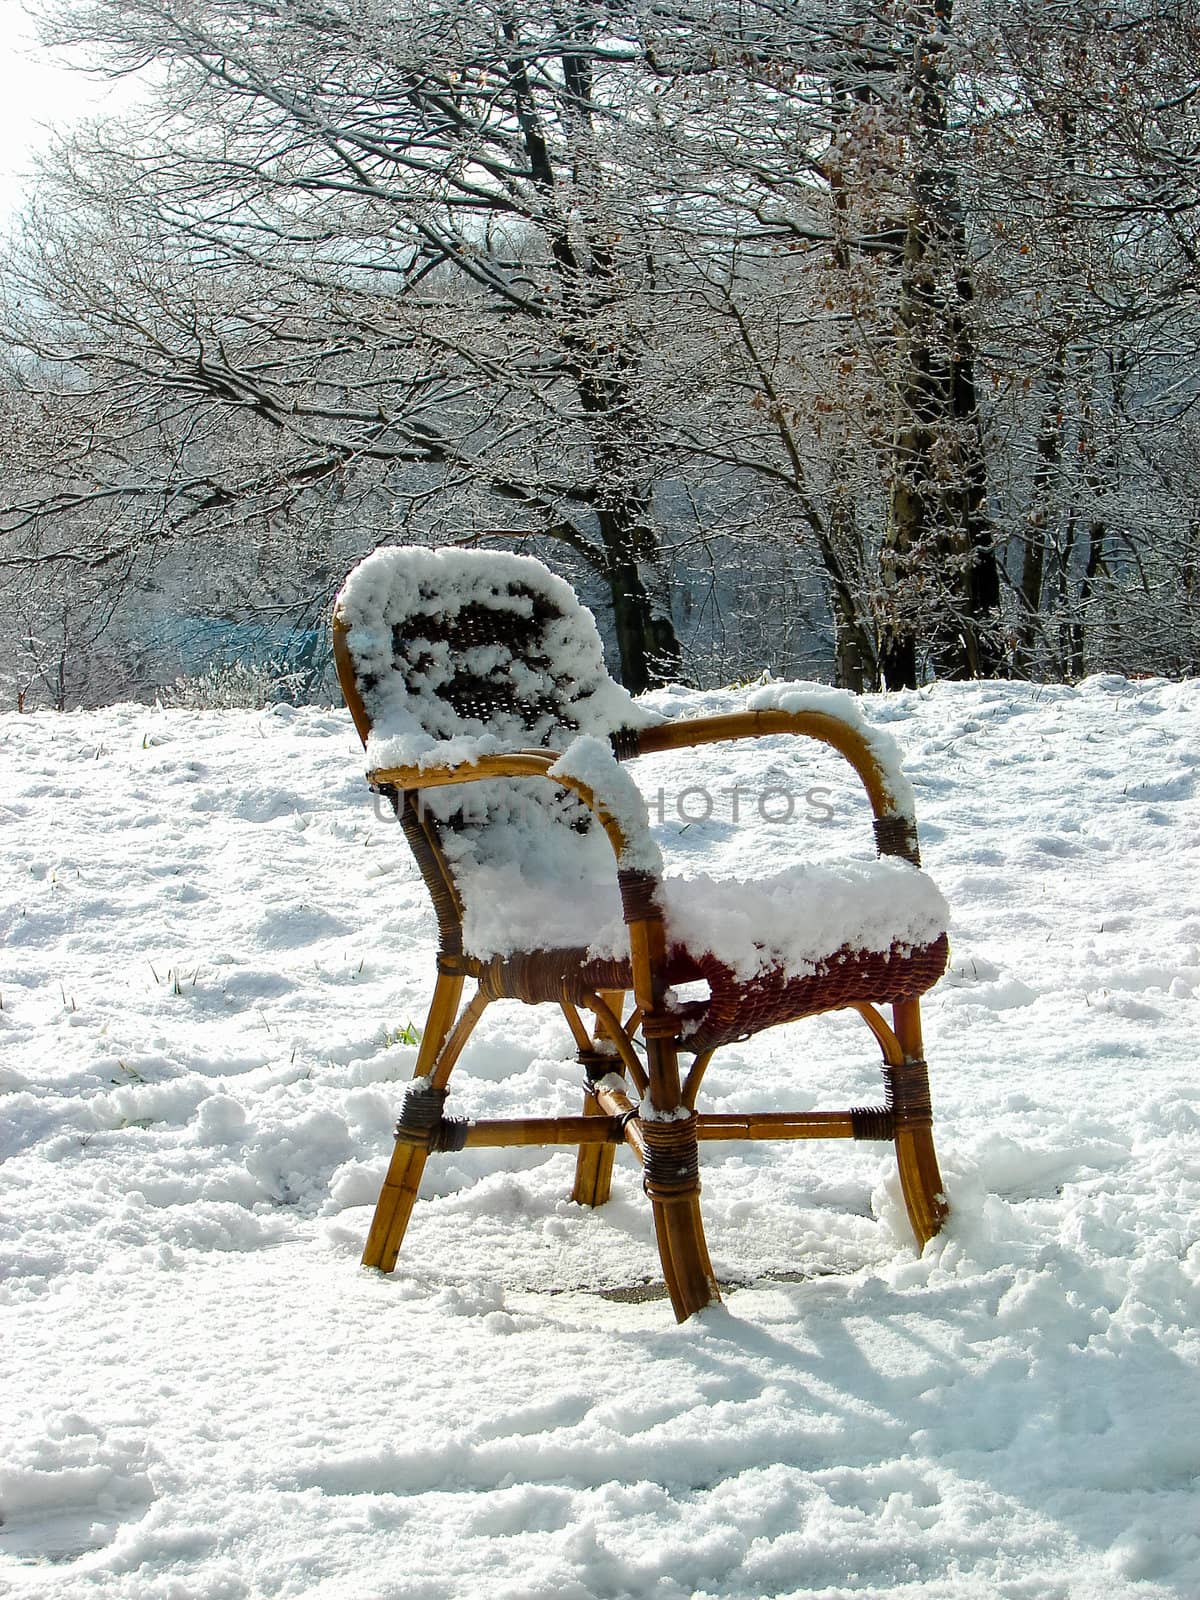 Wicker chair on a snowy meadow. Netherlands by NickNick